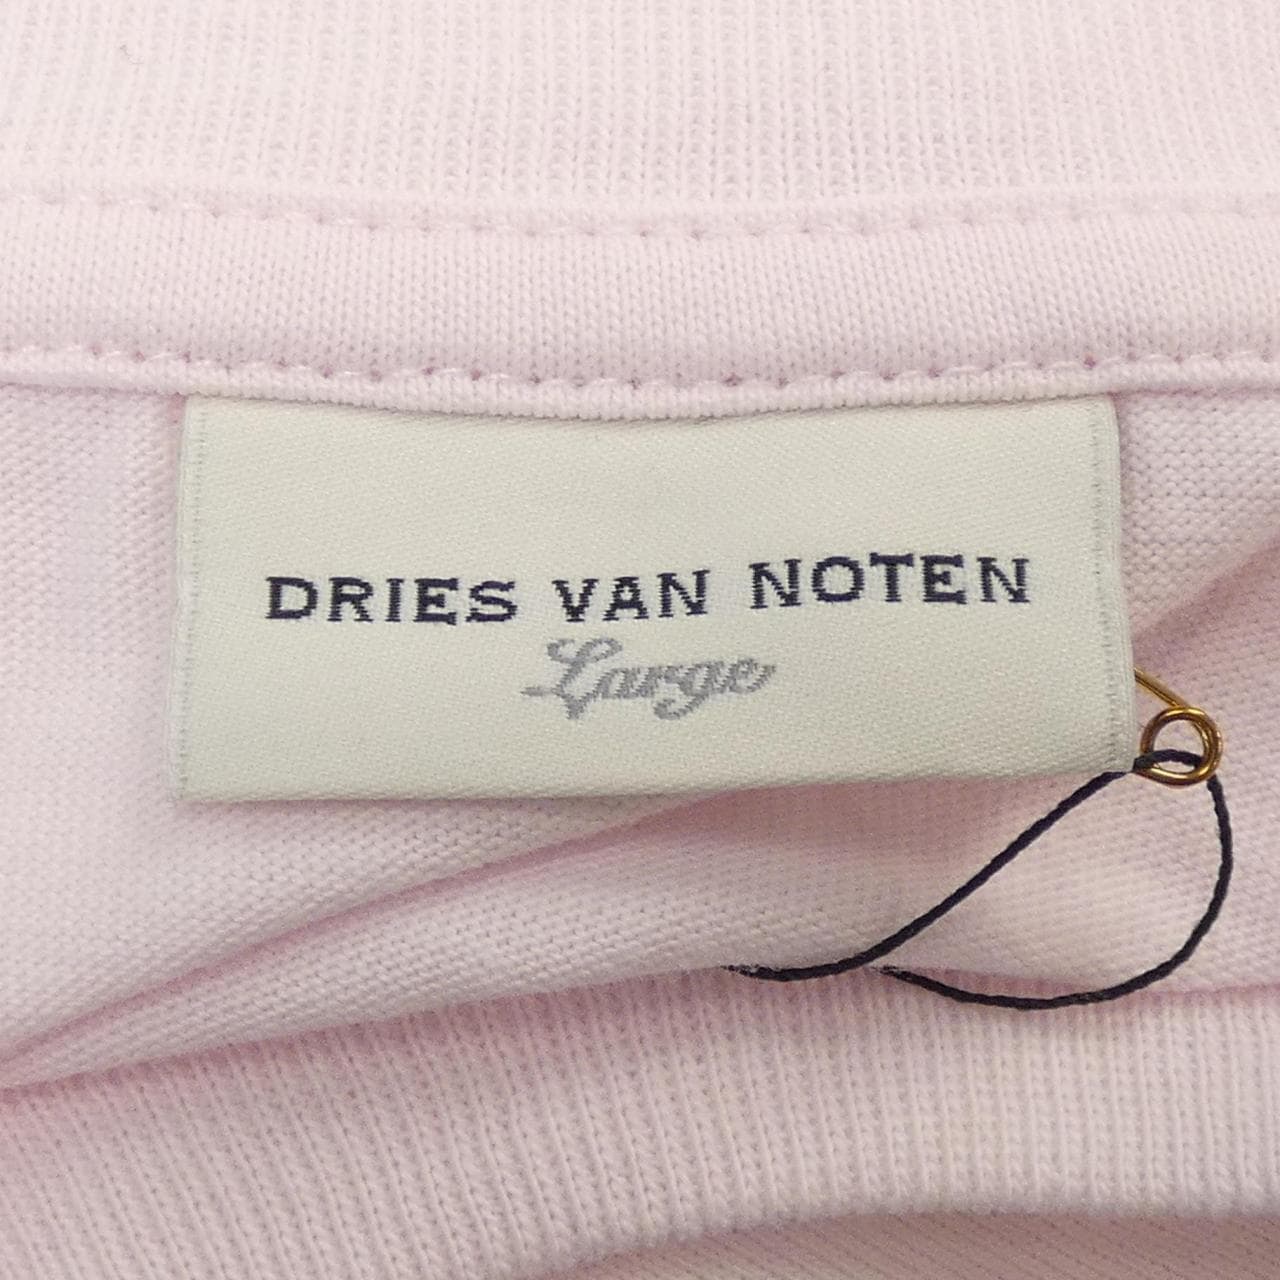 DRIES VAN NOTEN德赖斯·范诺顿 (Dries Van Noten) T 恤